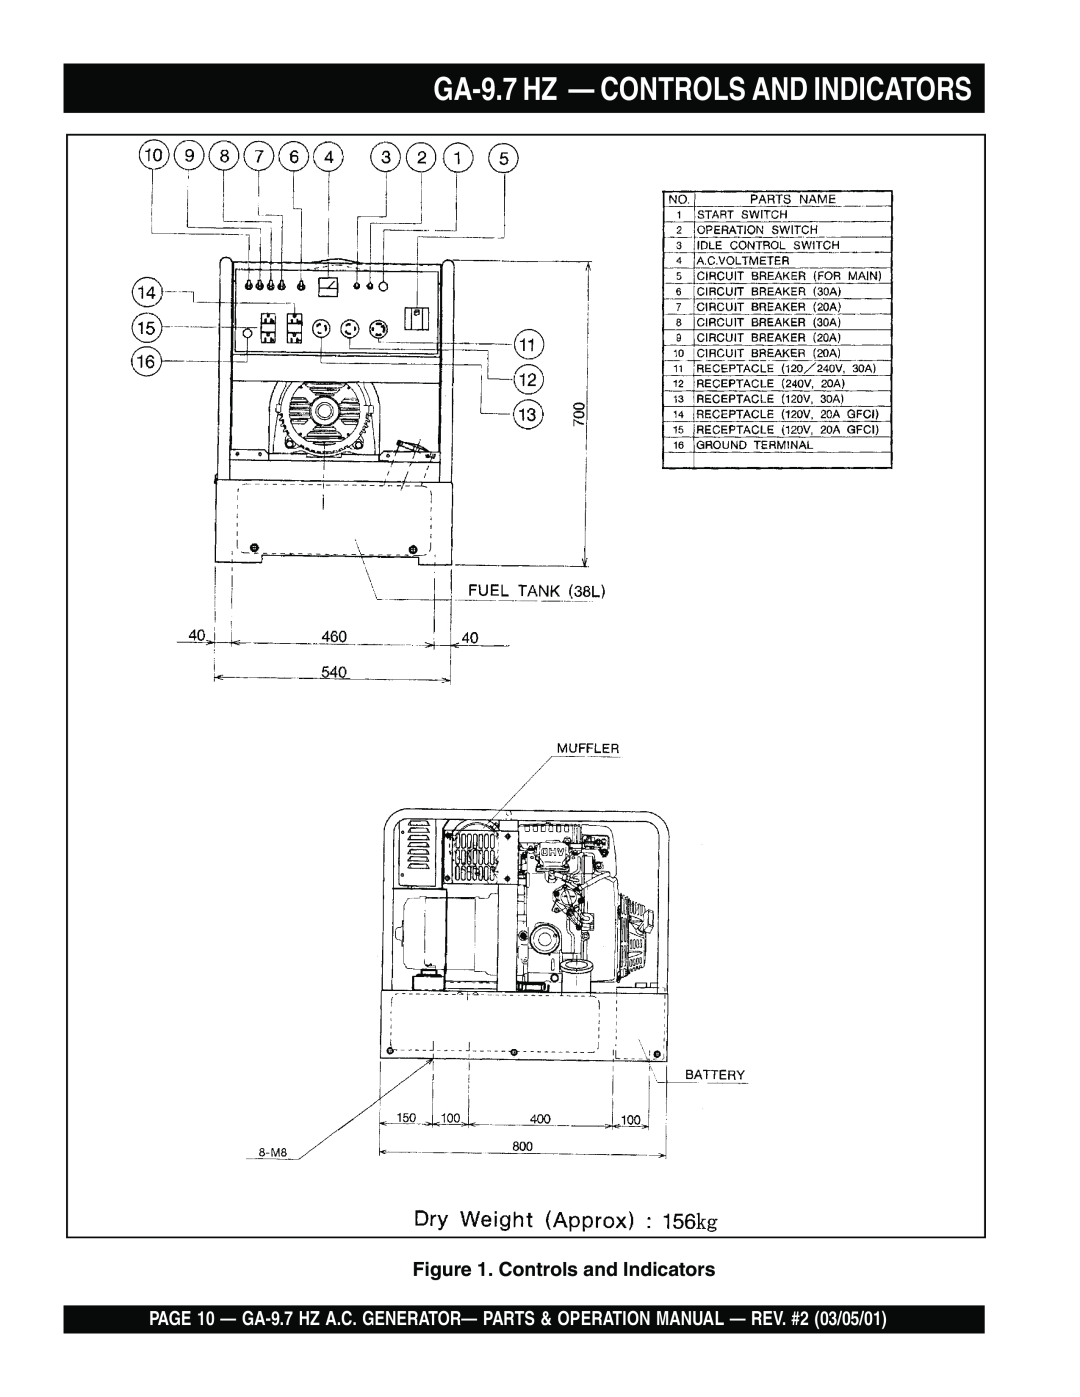 Multiquip GA-9.7 HZ operation manual GA-9.7HZ — CONTROLS AND INDICATORS, Controls and Indicators 